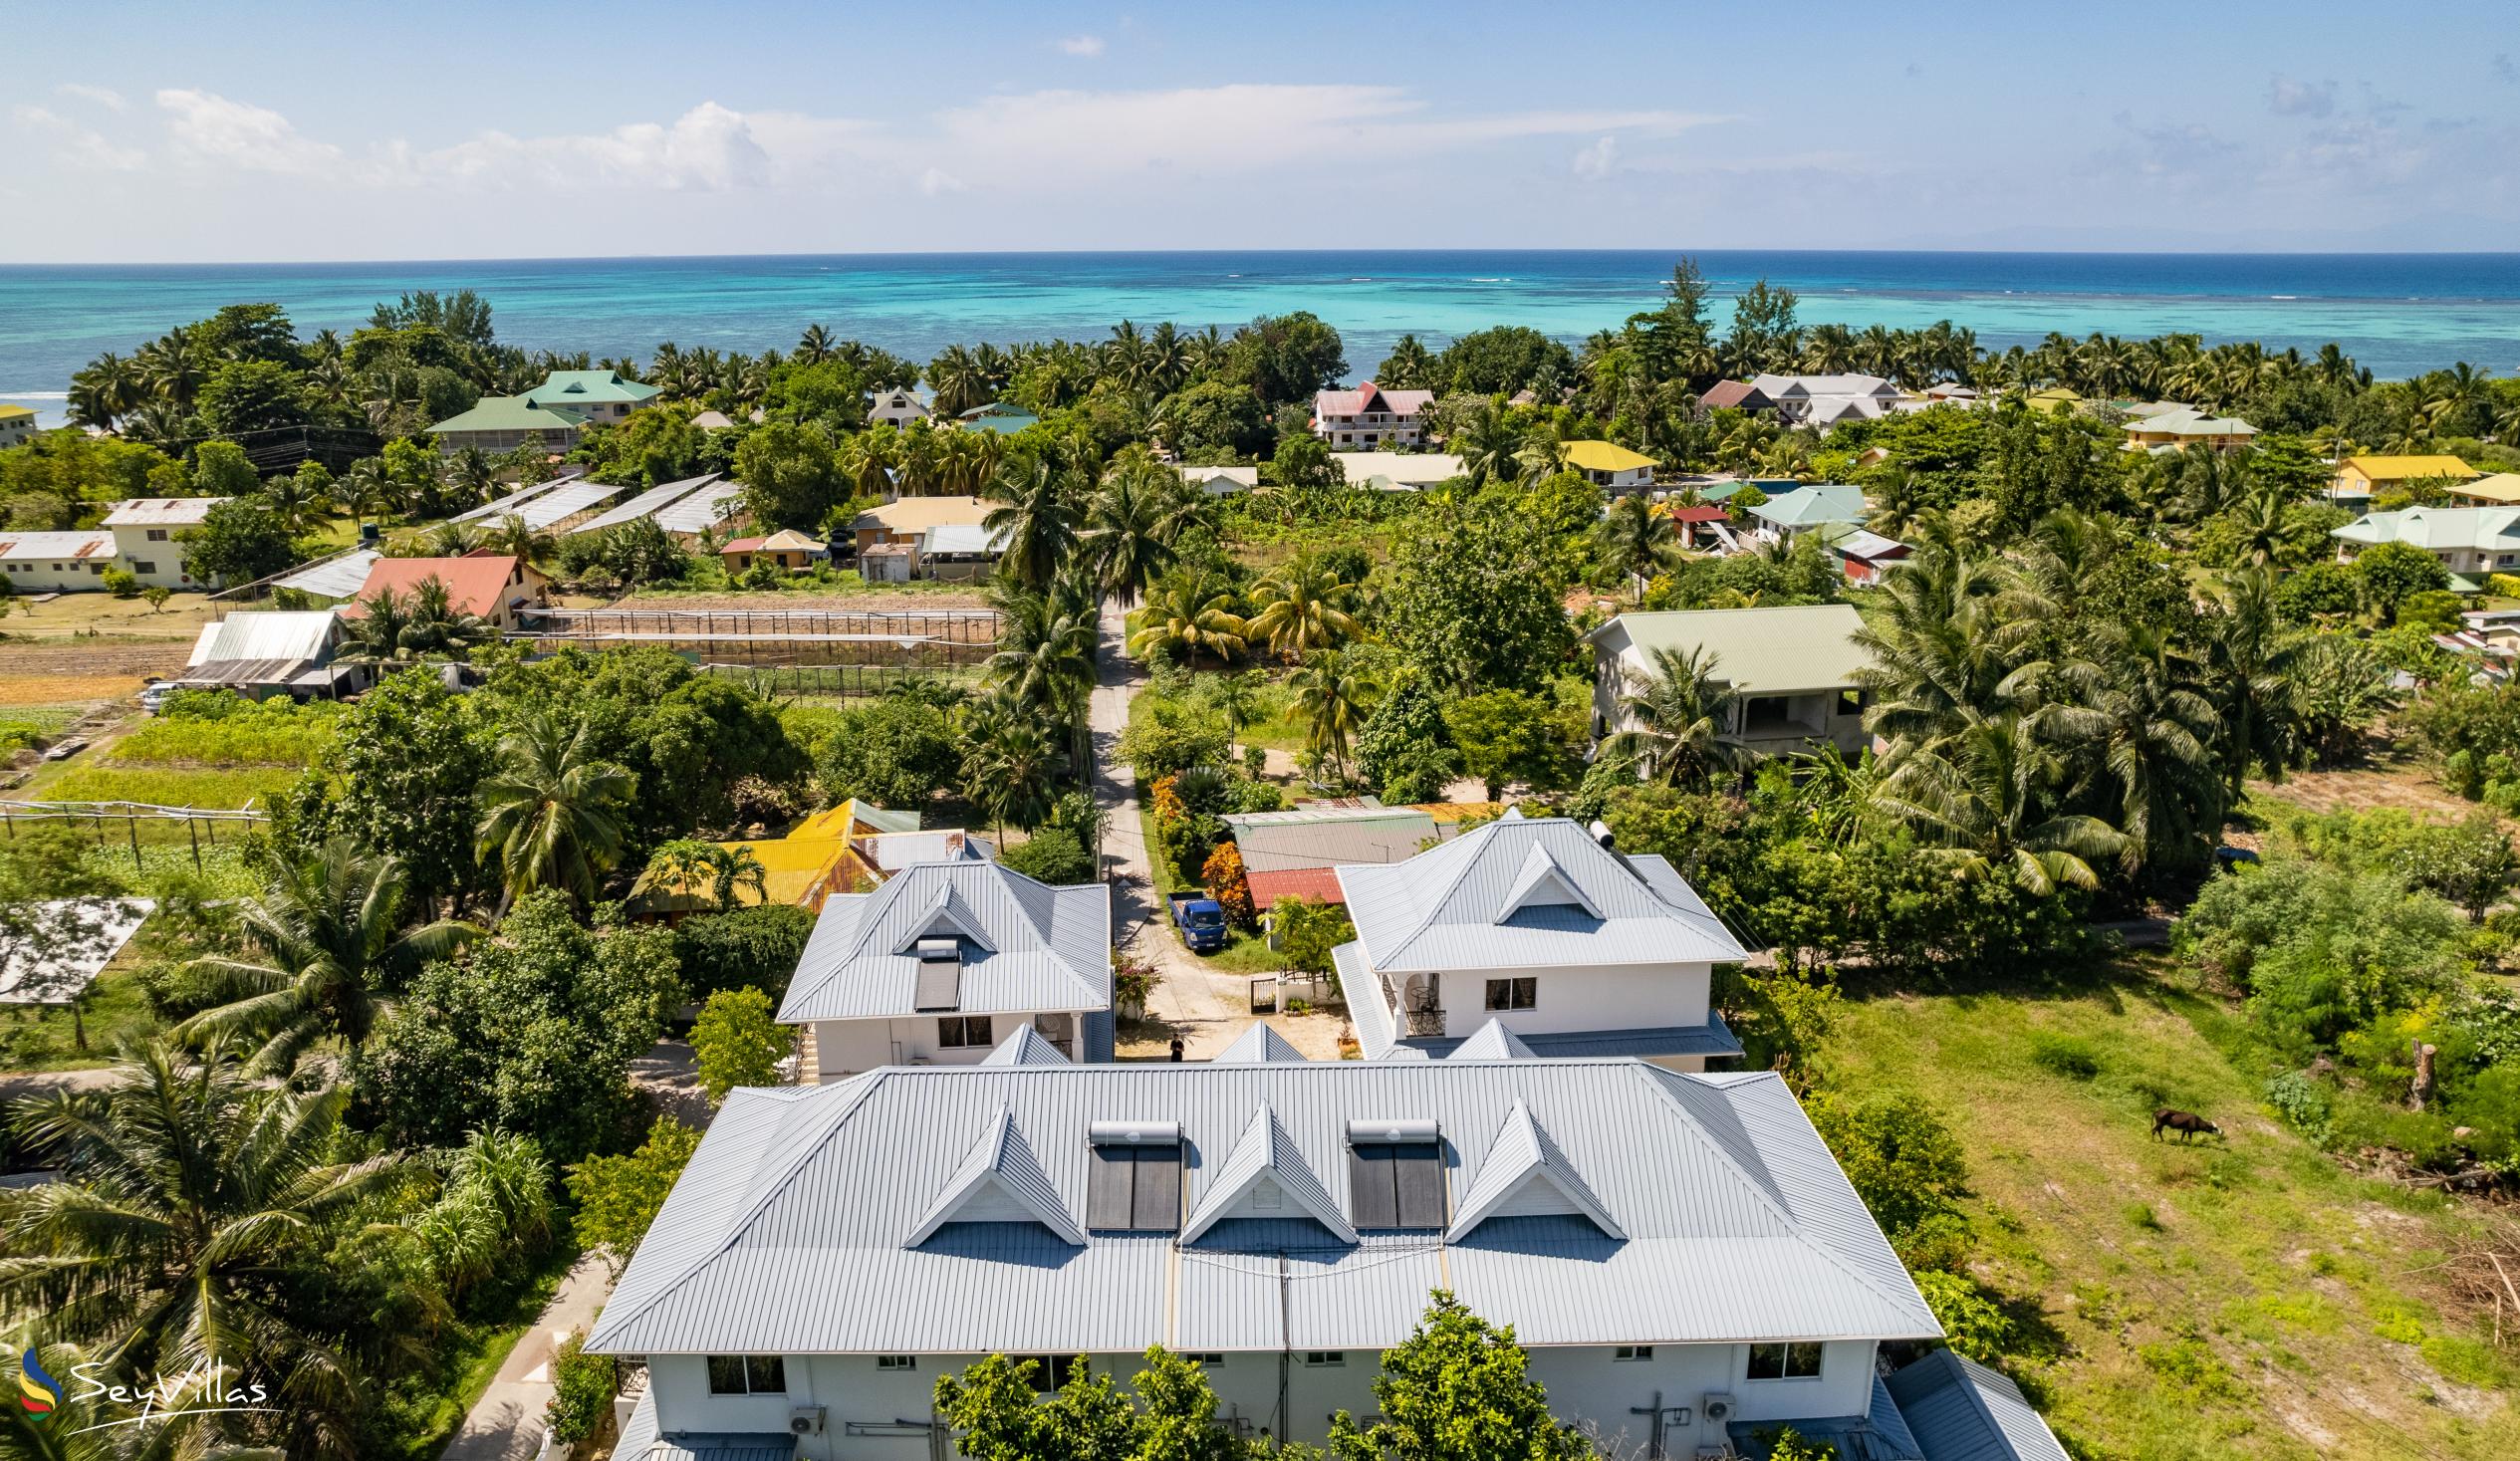 Foto 1: Casadani Luxury Guest House - Aussenbereich - Praslin (Seychellen)